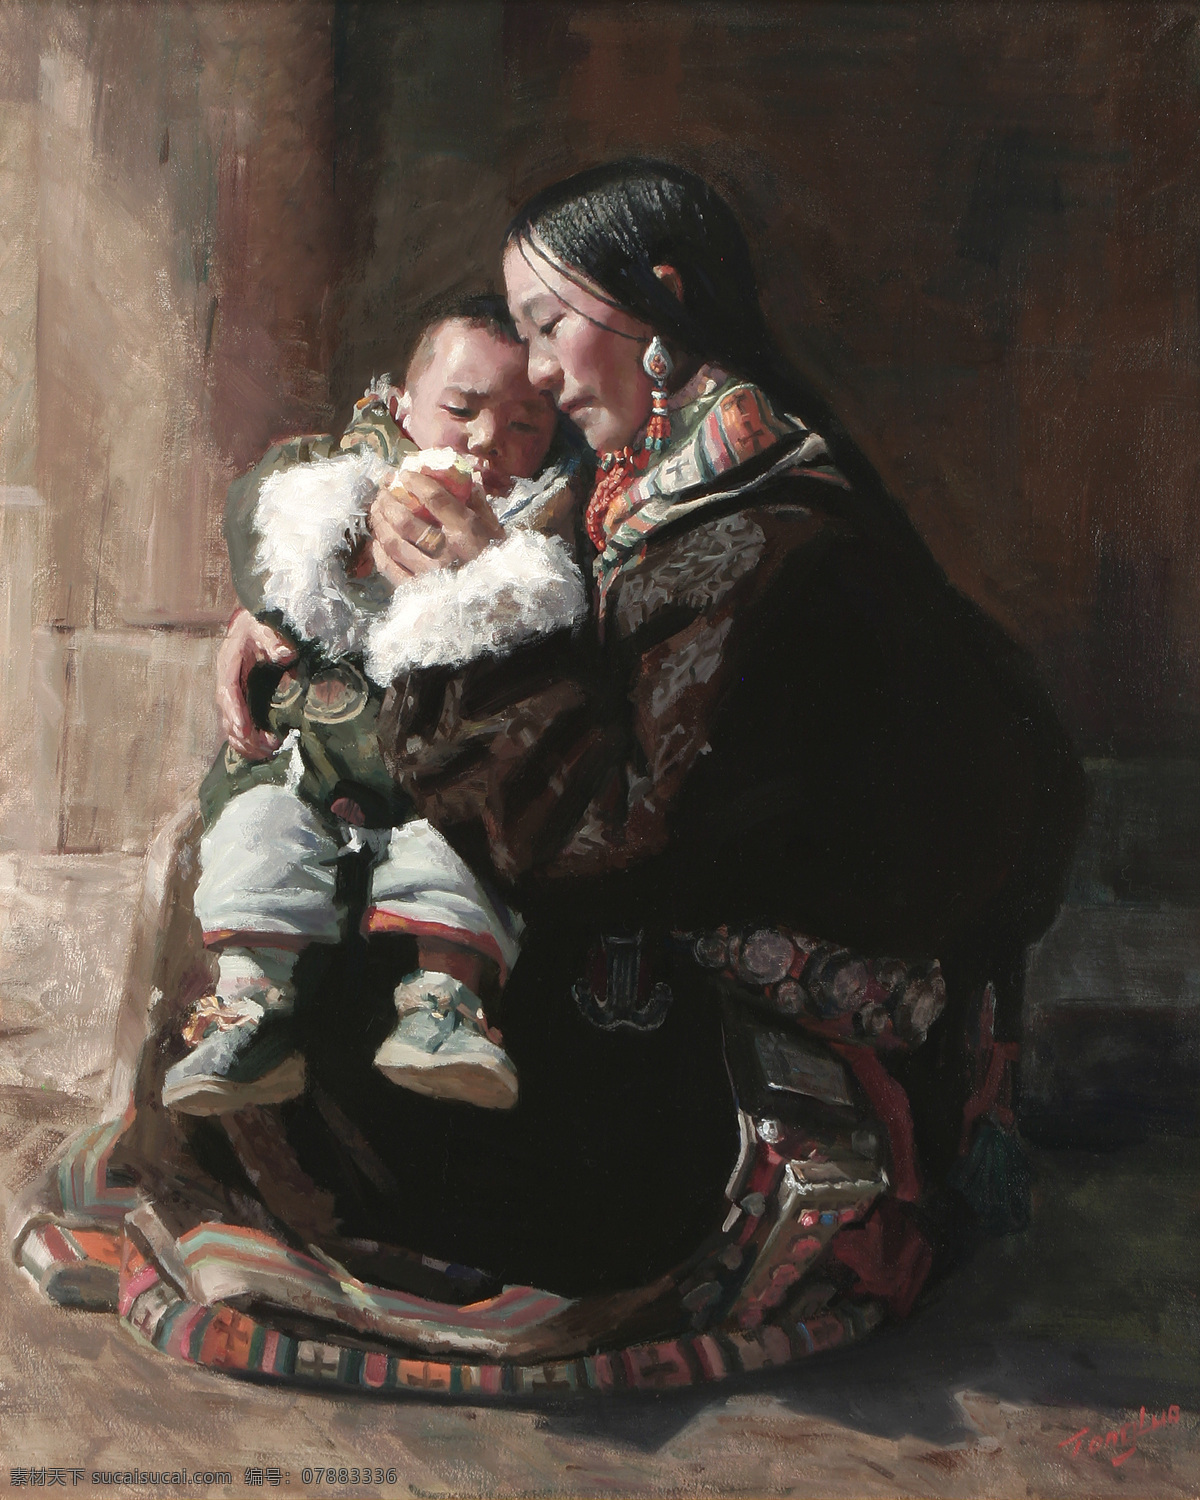 抱 孩子 西藏 美女 油画 藏族 肖像 人物肖像画 东方女性 写生 人物油画写生 油画艺术 绘画艺术 书画文字 文化艺术